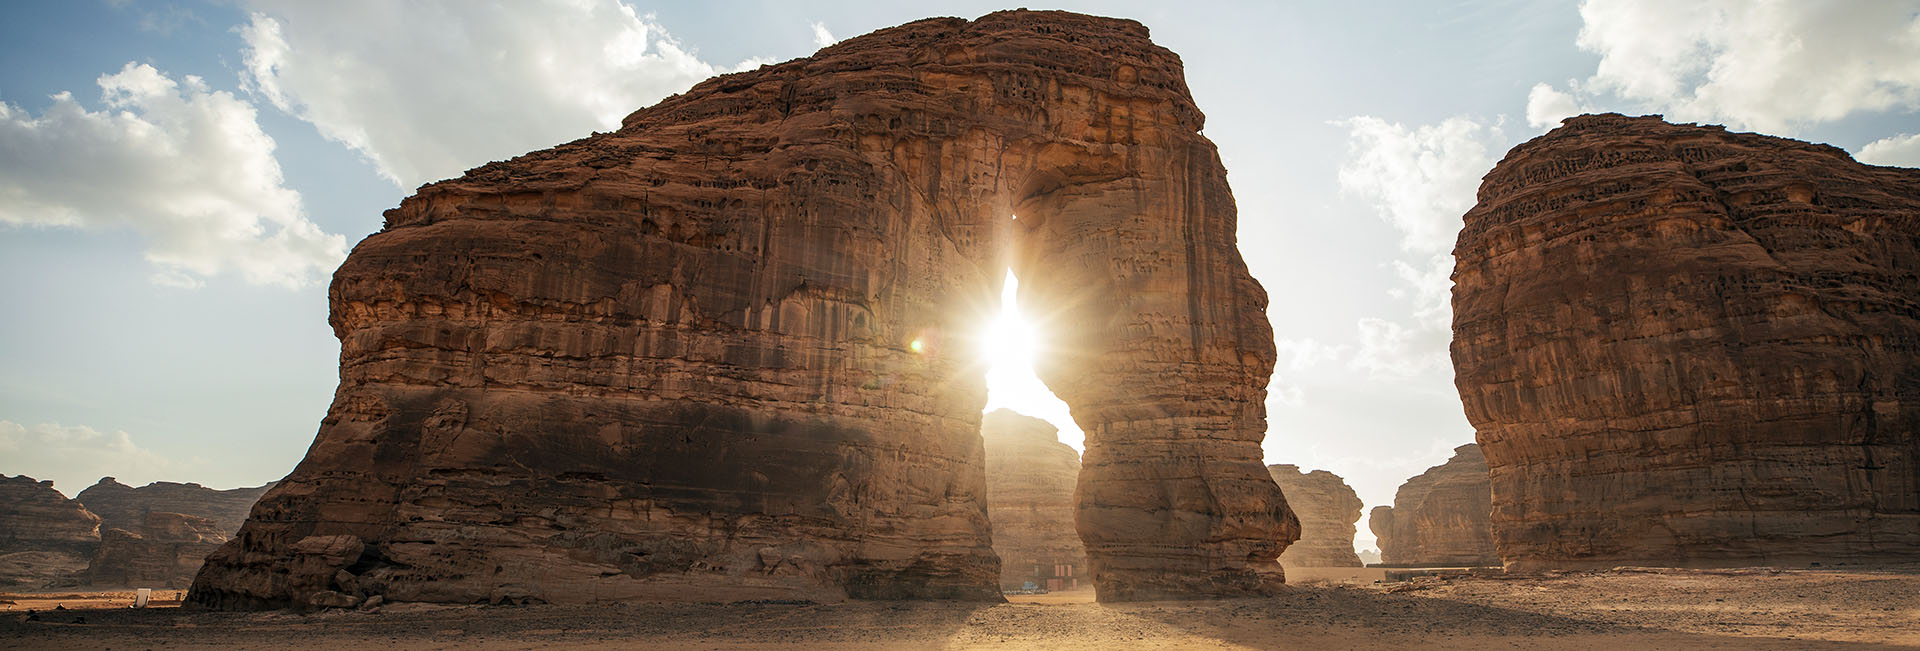 Al Ula's Iconic Elephant Rock. Photo credit: Royal Commission for Al Ula